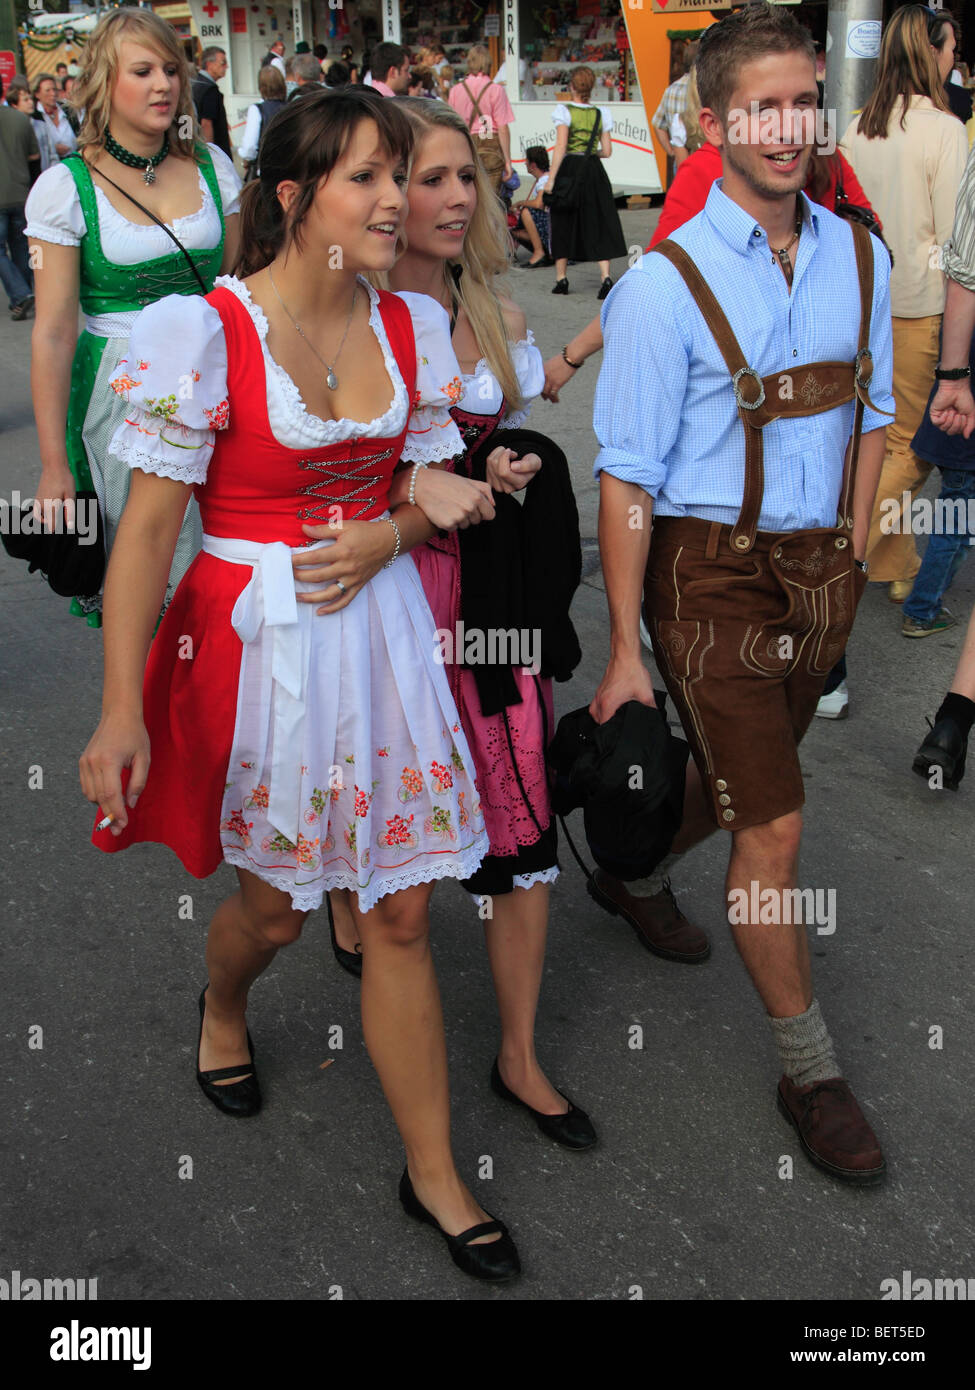 Deutschland, Bayern, München, Oktoberfest, Menschen in traditioneller  Kleidung Stockfotografie - Alamy